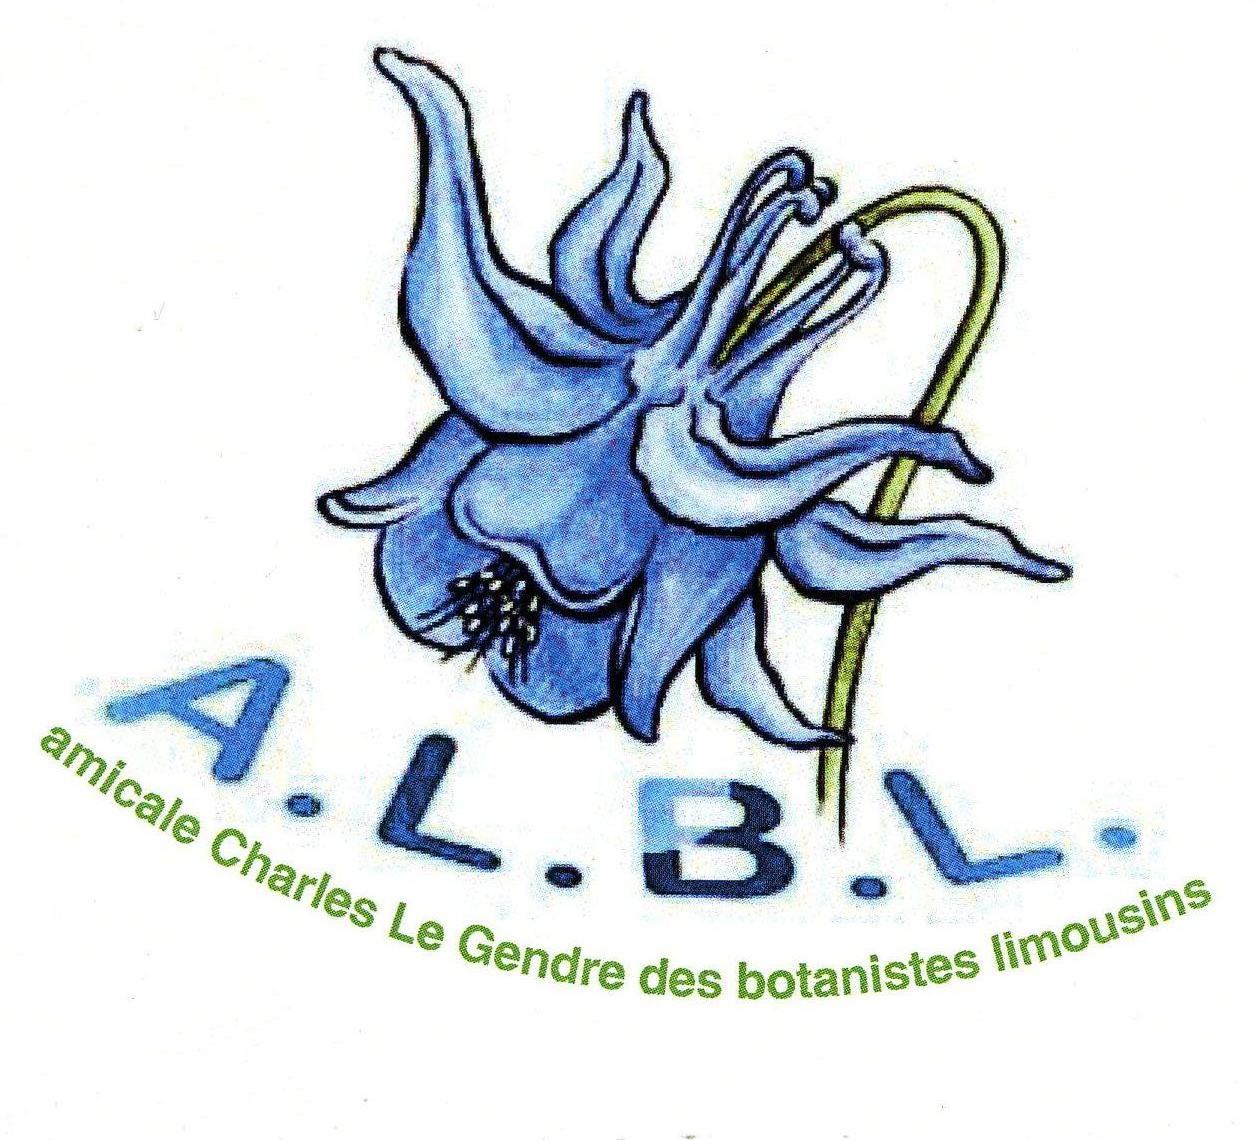 Programme des sorties botaniques de l'Amicale Charles le Gendre des botanistes du Limousin